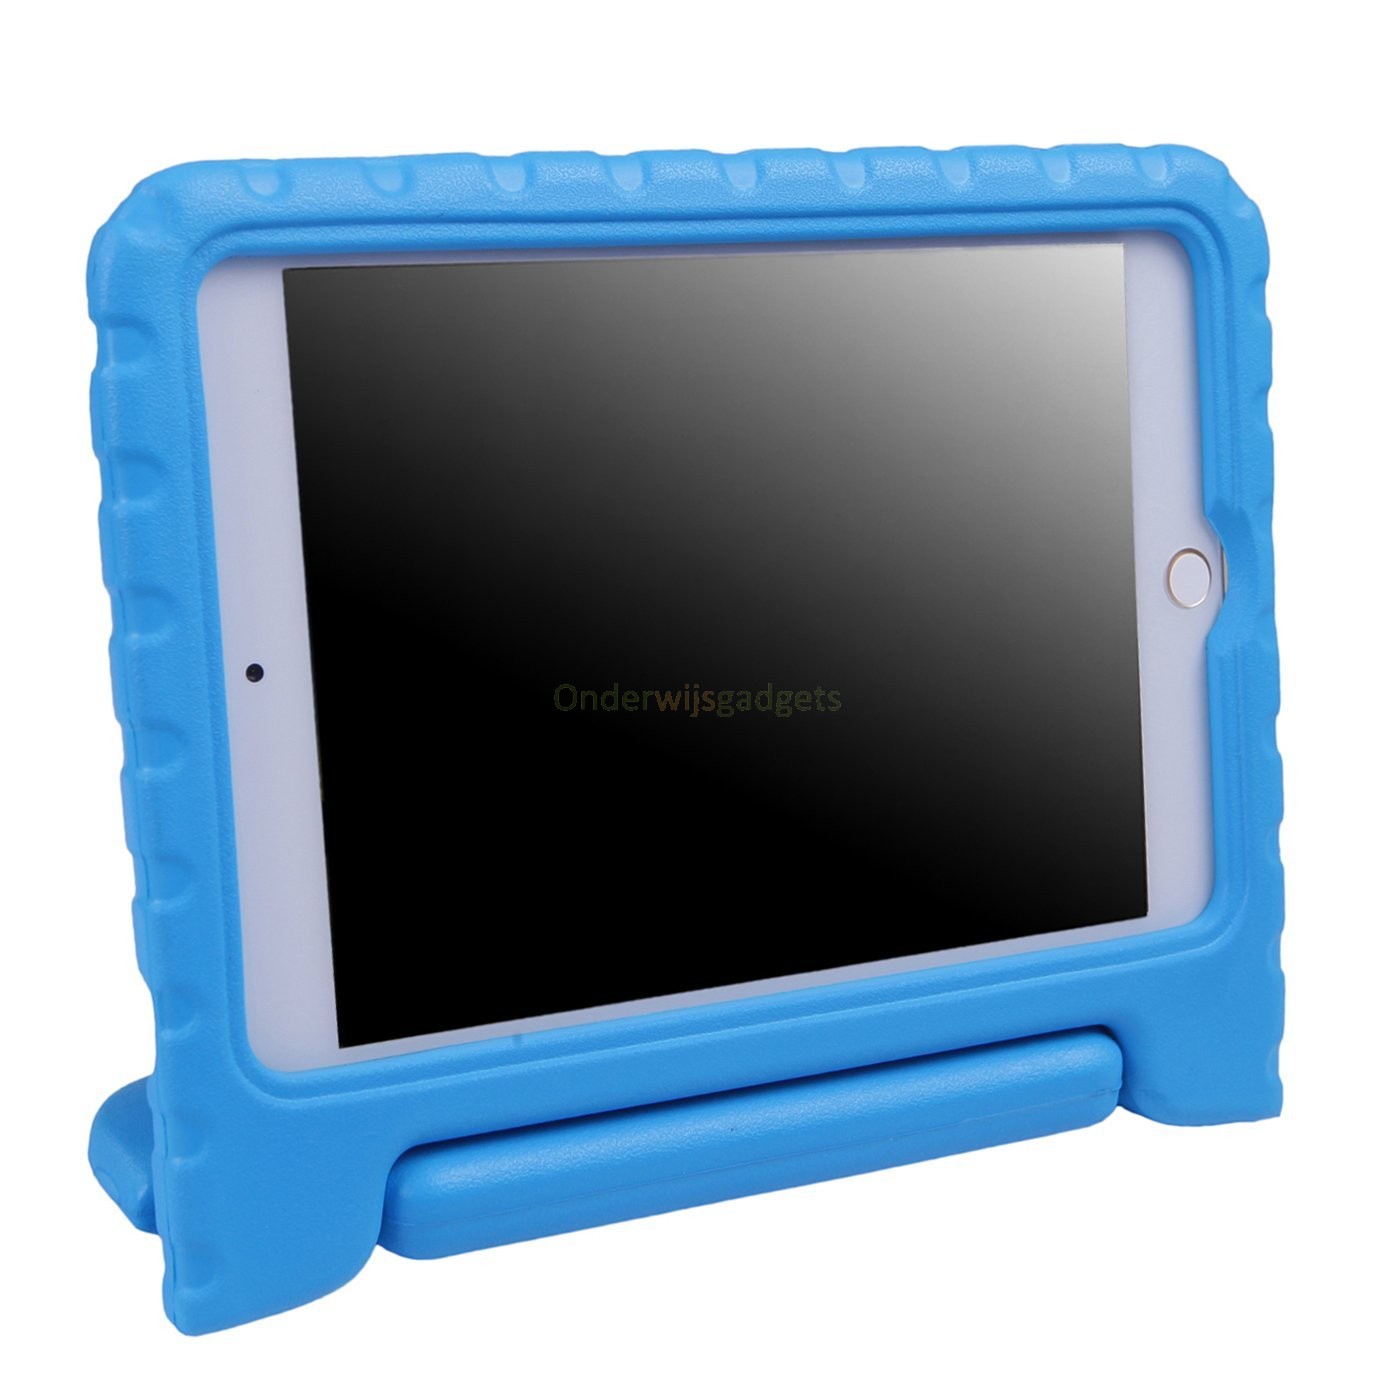 versieren bijvoeglijk naamwoord passagier iPad mini 4 / 5 hoes kinderen blauw